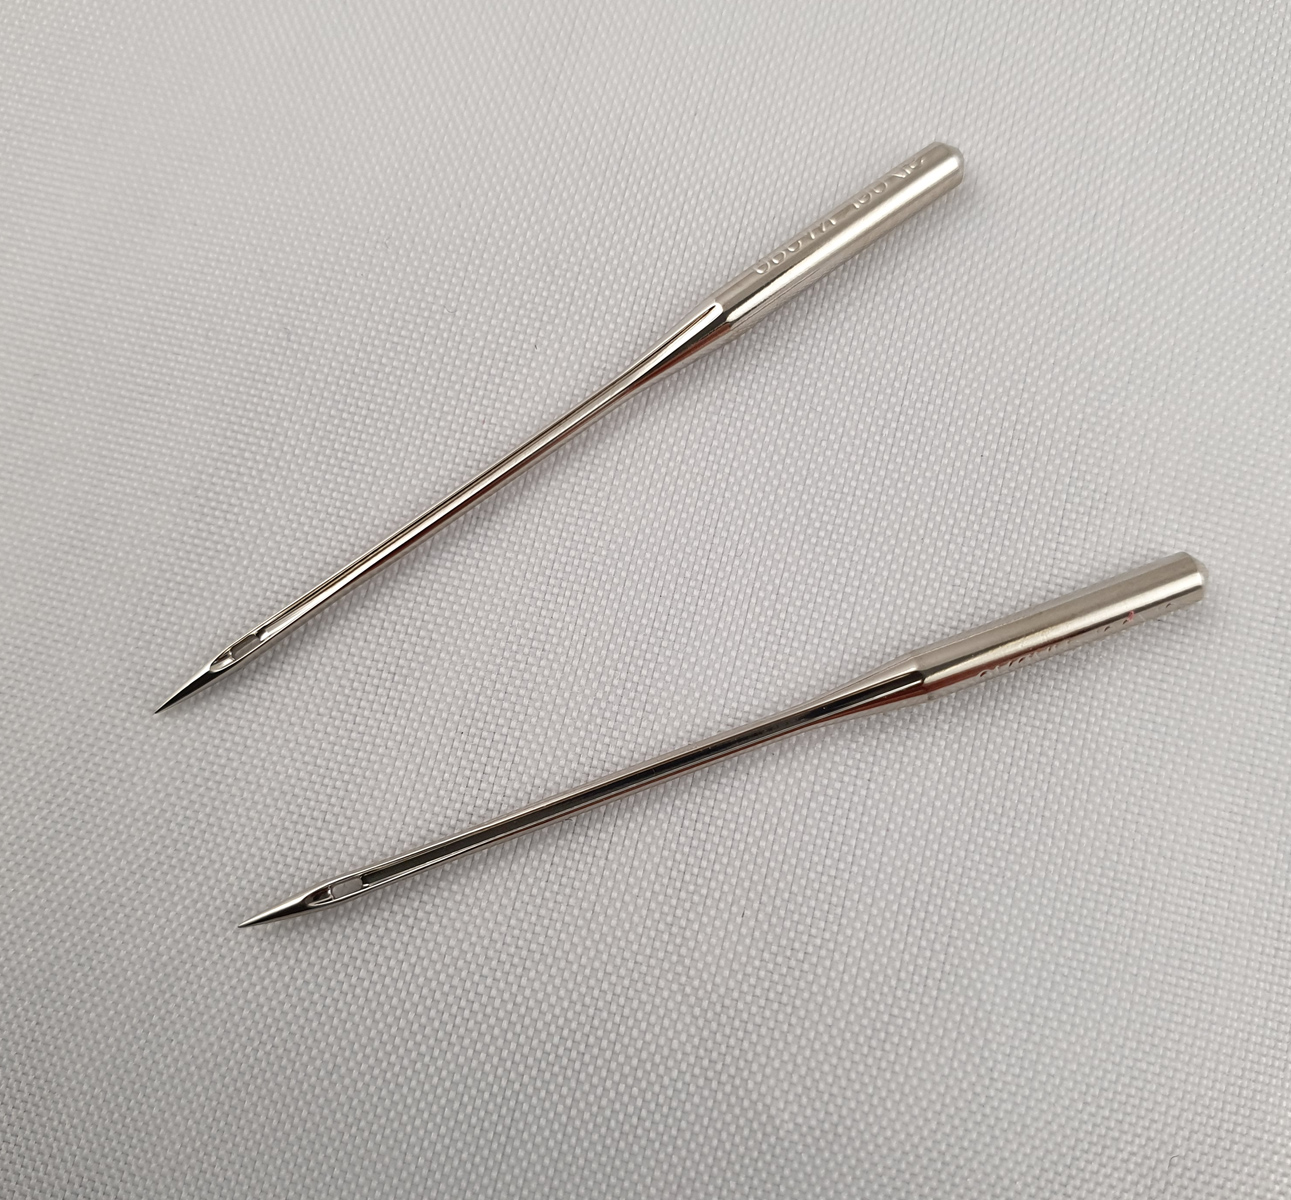 needles for sewing machine, round shank, 134 KK, 797 KK, B 134 No 110